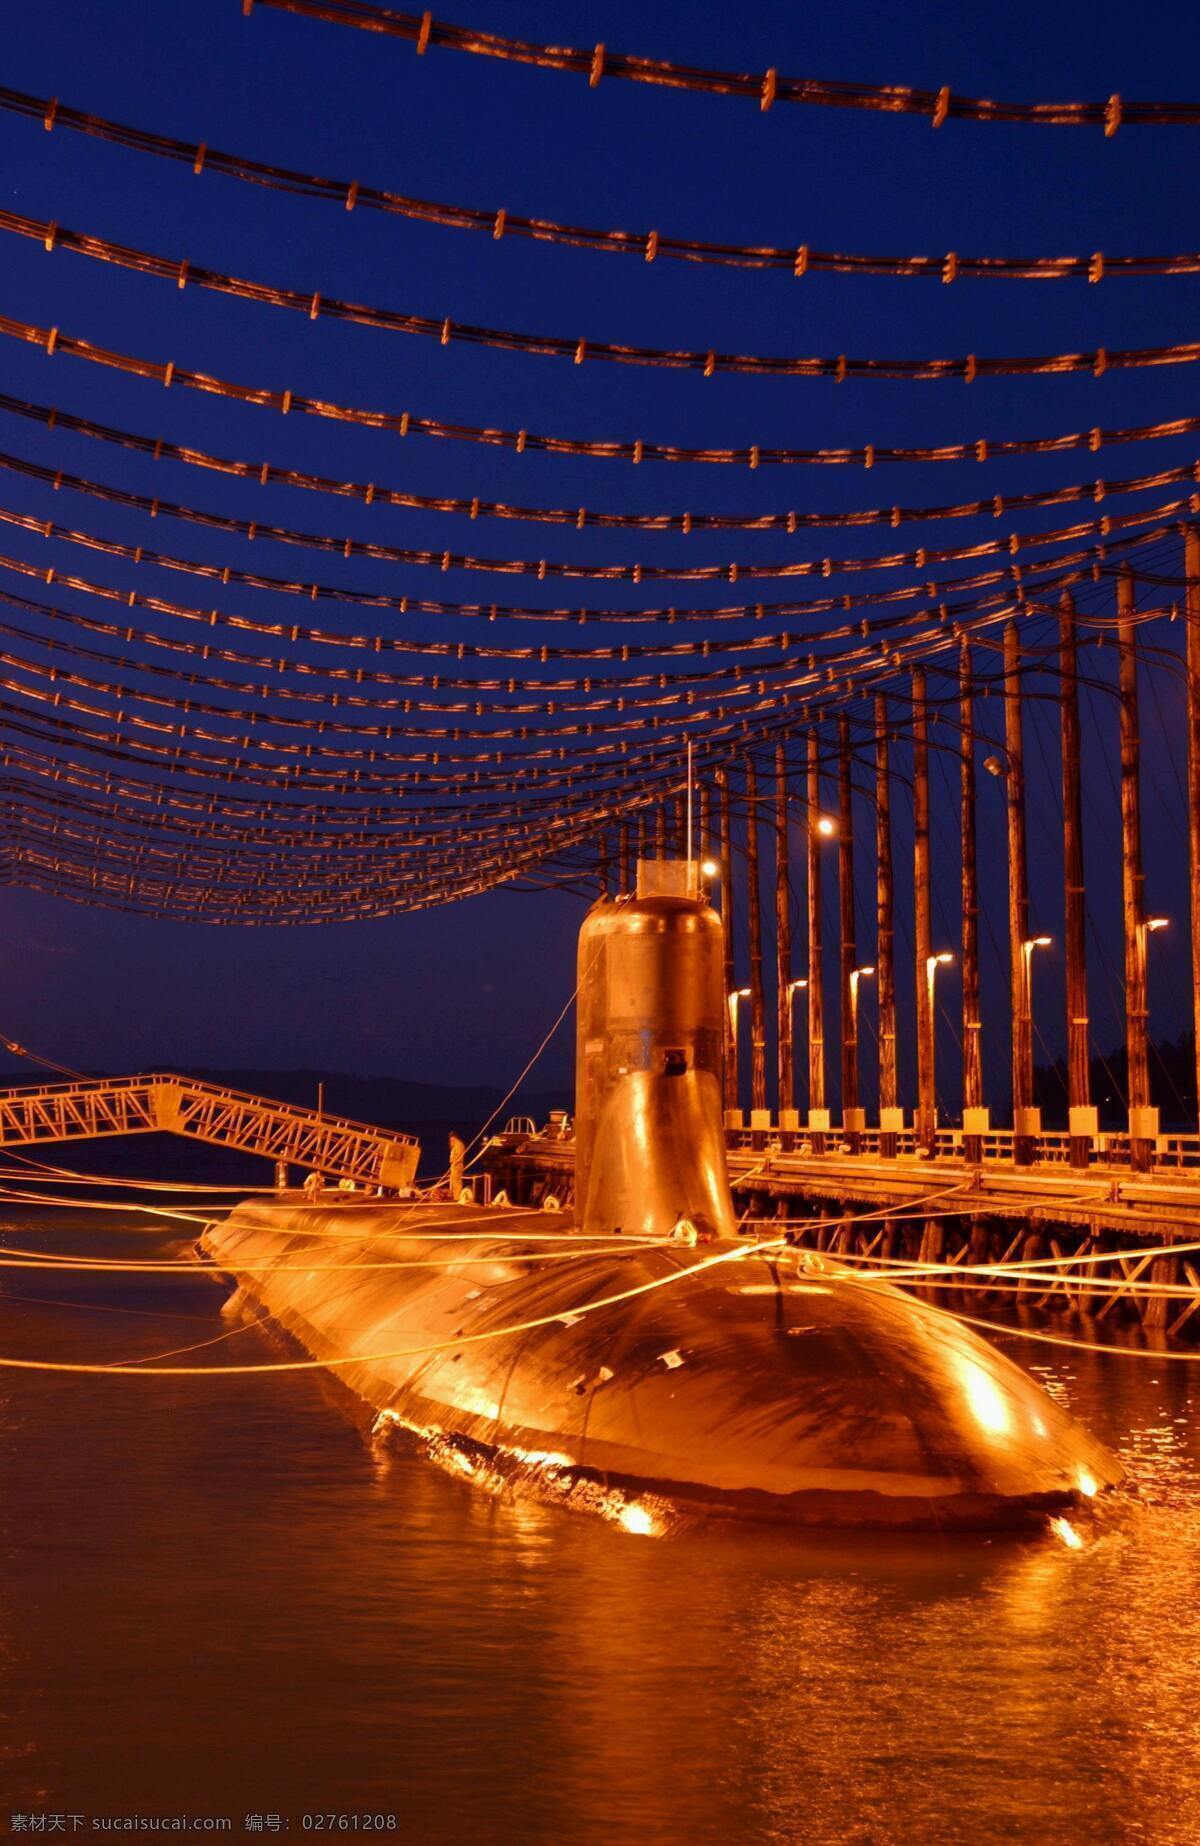 吉米 卡特号核潜艇 美国 核潜艇 夜景 海浪级 攻击潜艇 军事 武器 吉米卡特号 现代科技 军事武器 摄影图库